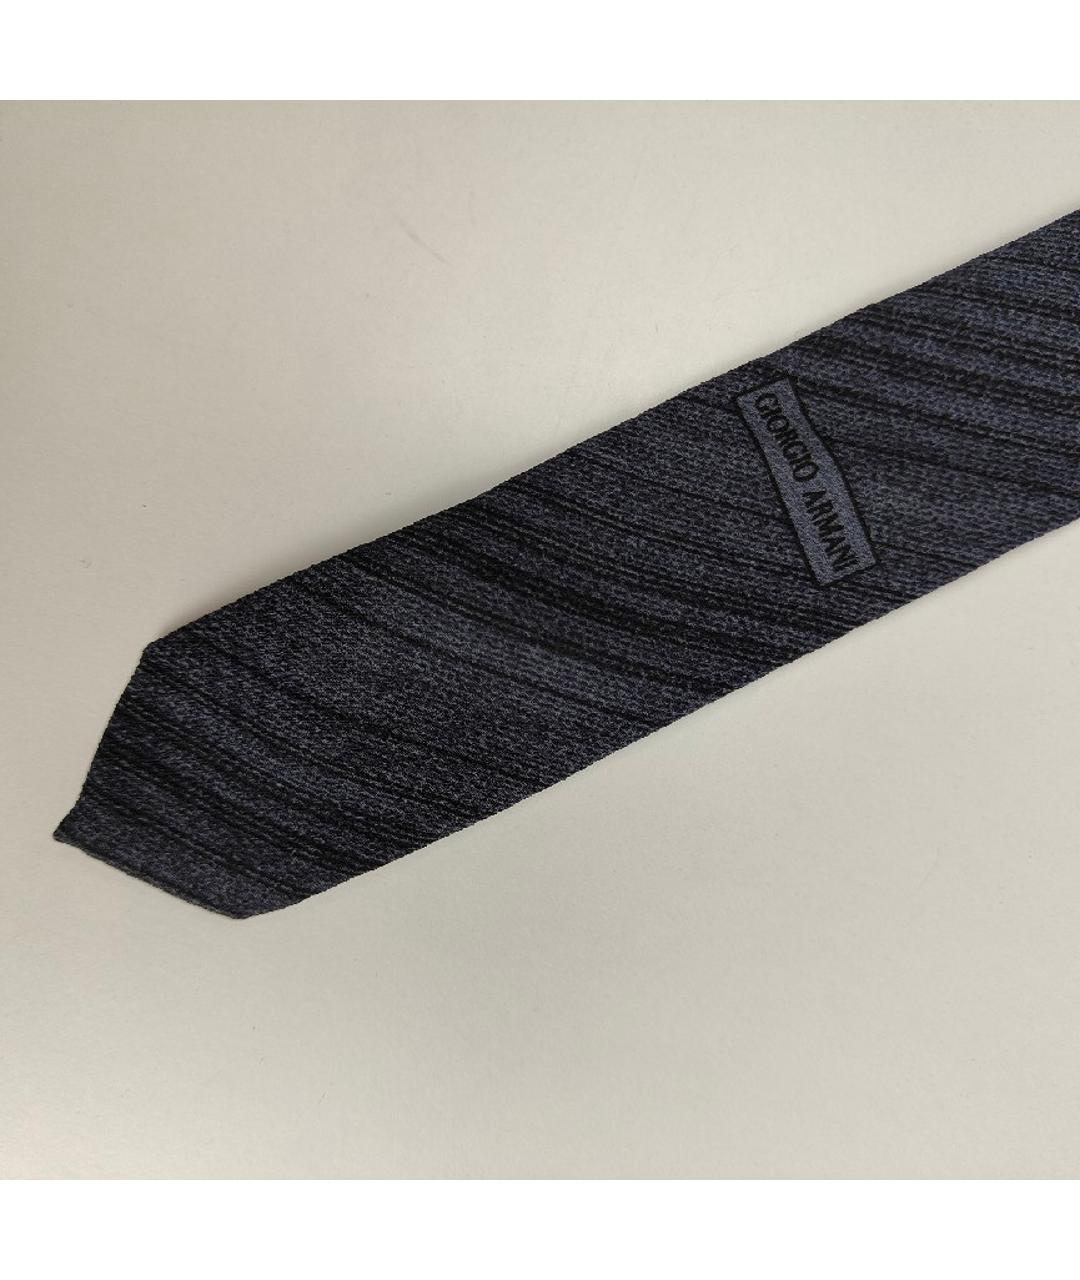 GIORGIO ARMANI Серый шелковый галстук, фото 2